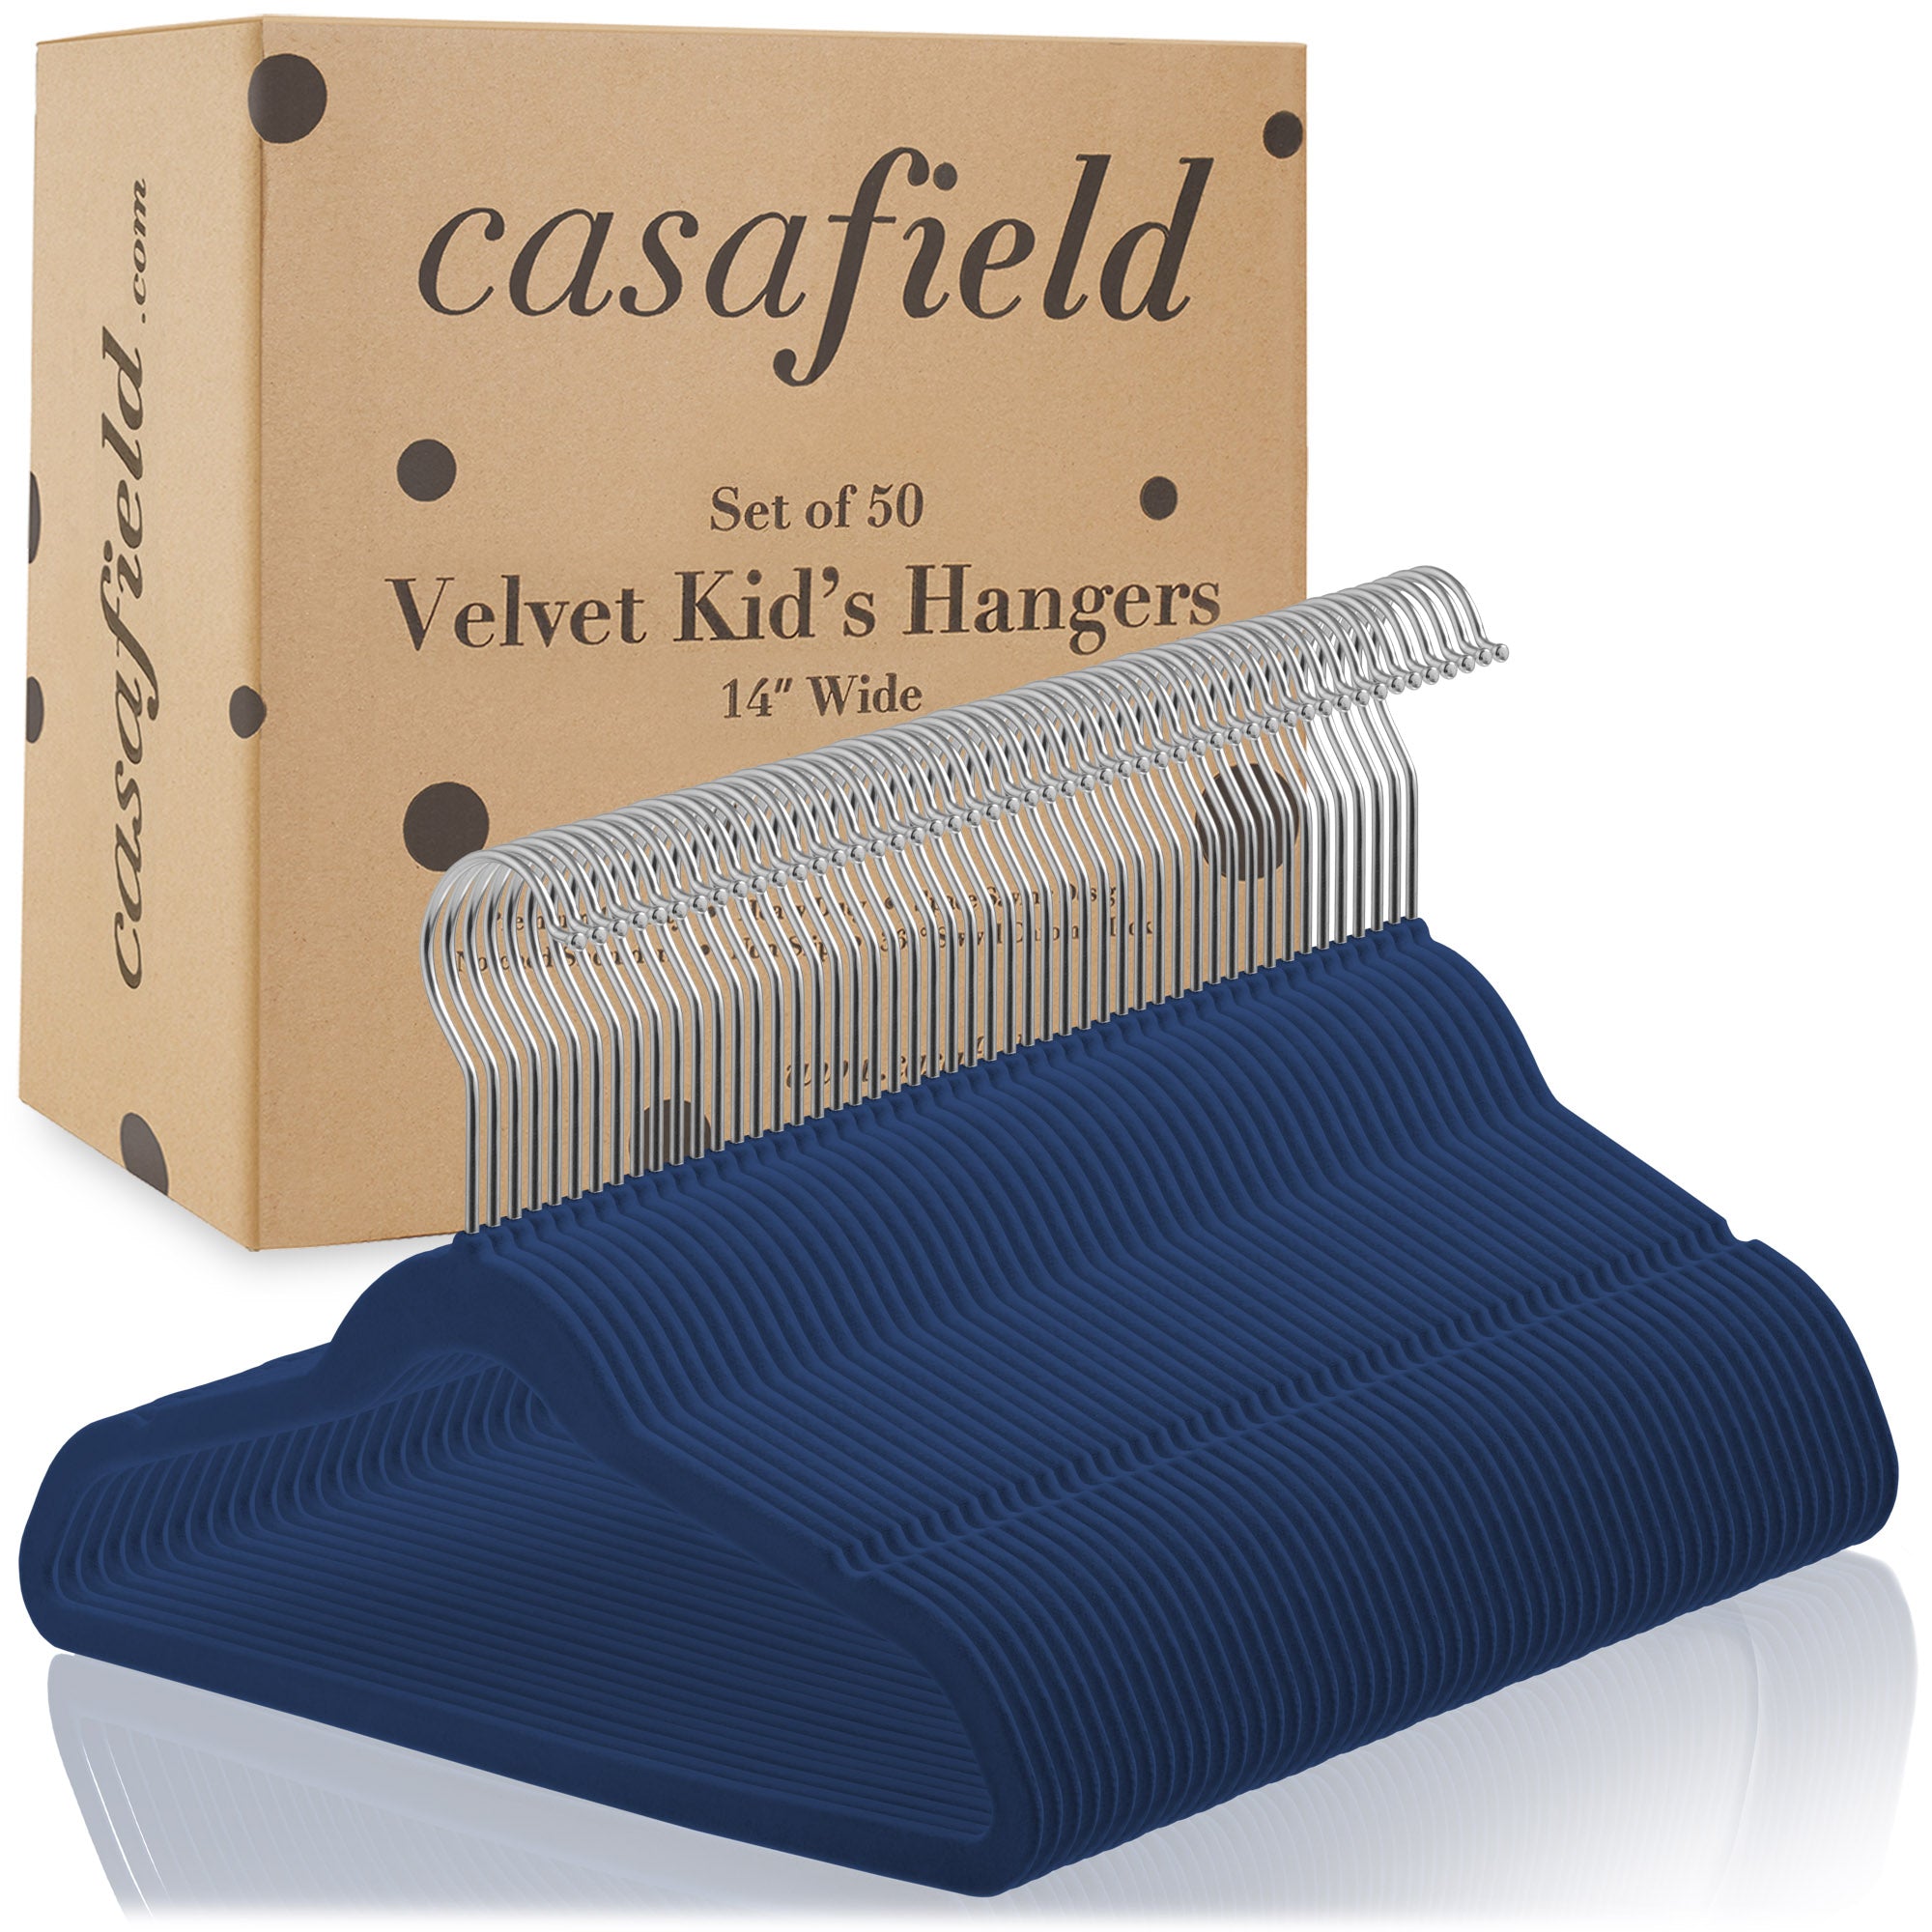 Casafield 50 Velvet Kid's Hangers for Children's Clothes, 14 inch - Light Blue